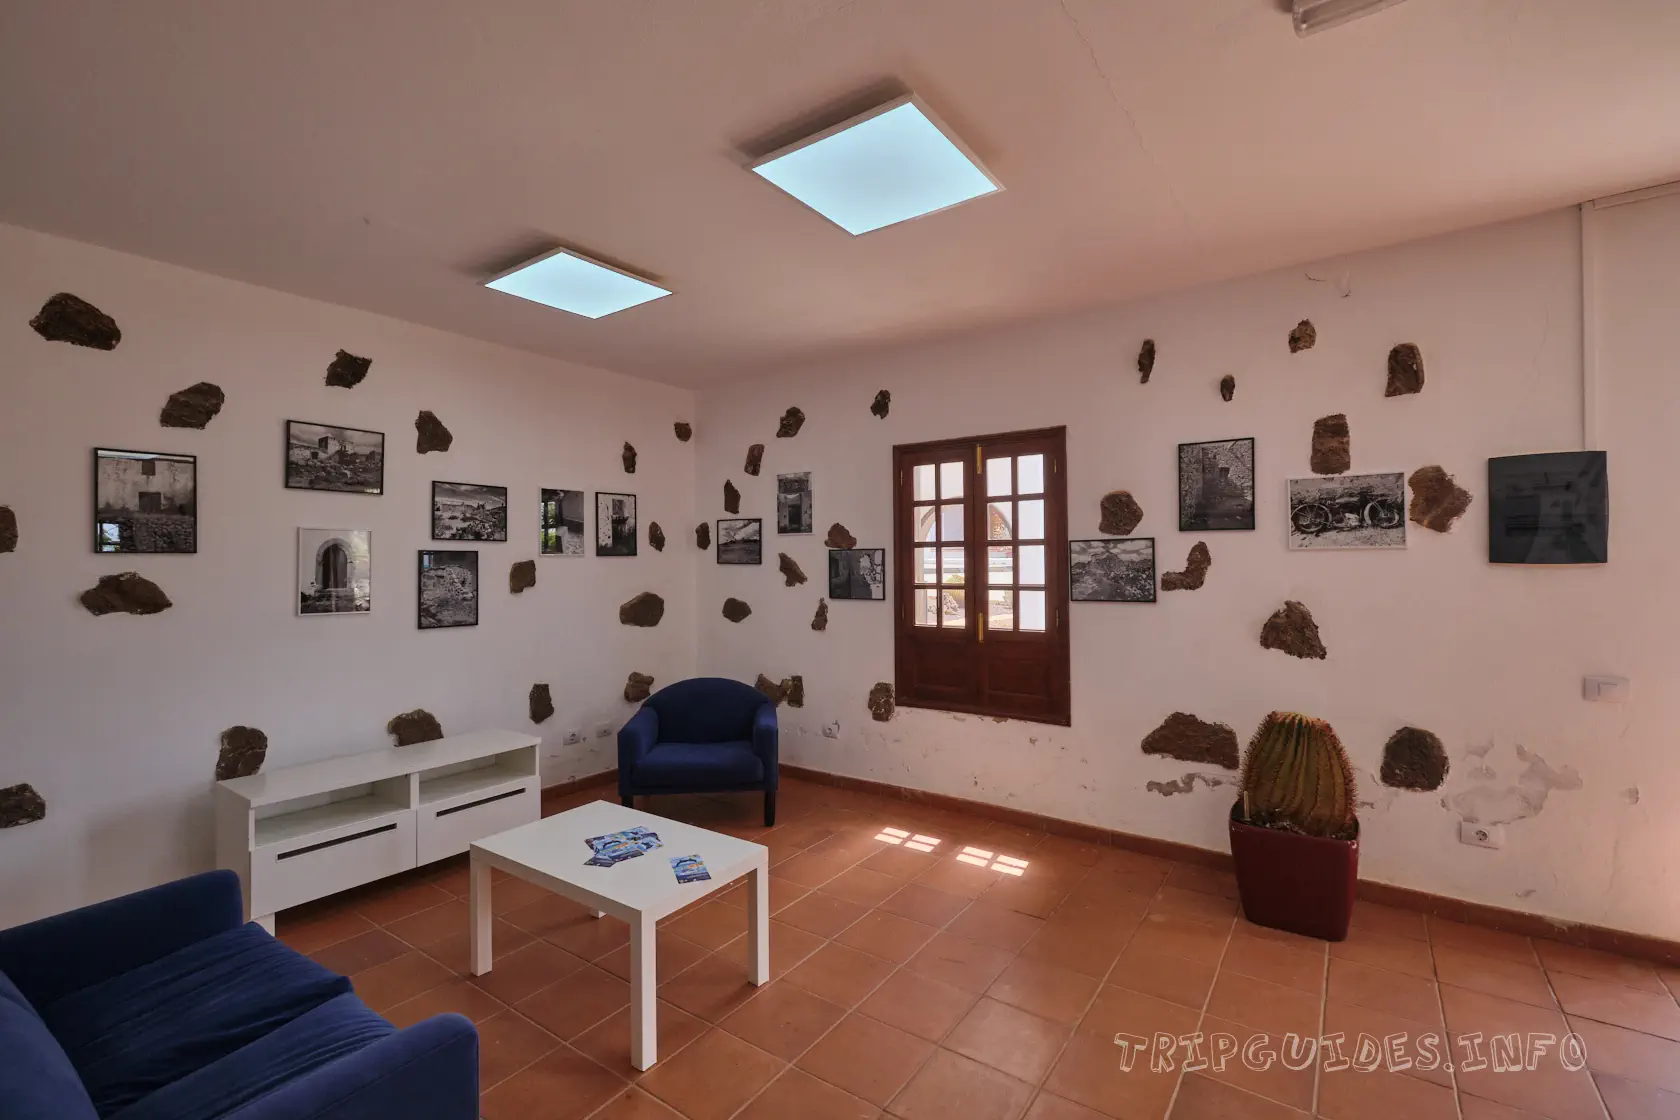 Museo del Queso Majorero Fuerteventura 34 - Музей козьего сыра Махореро